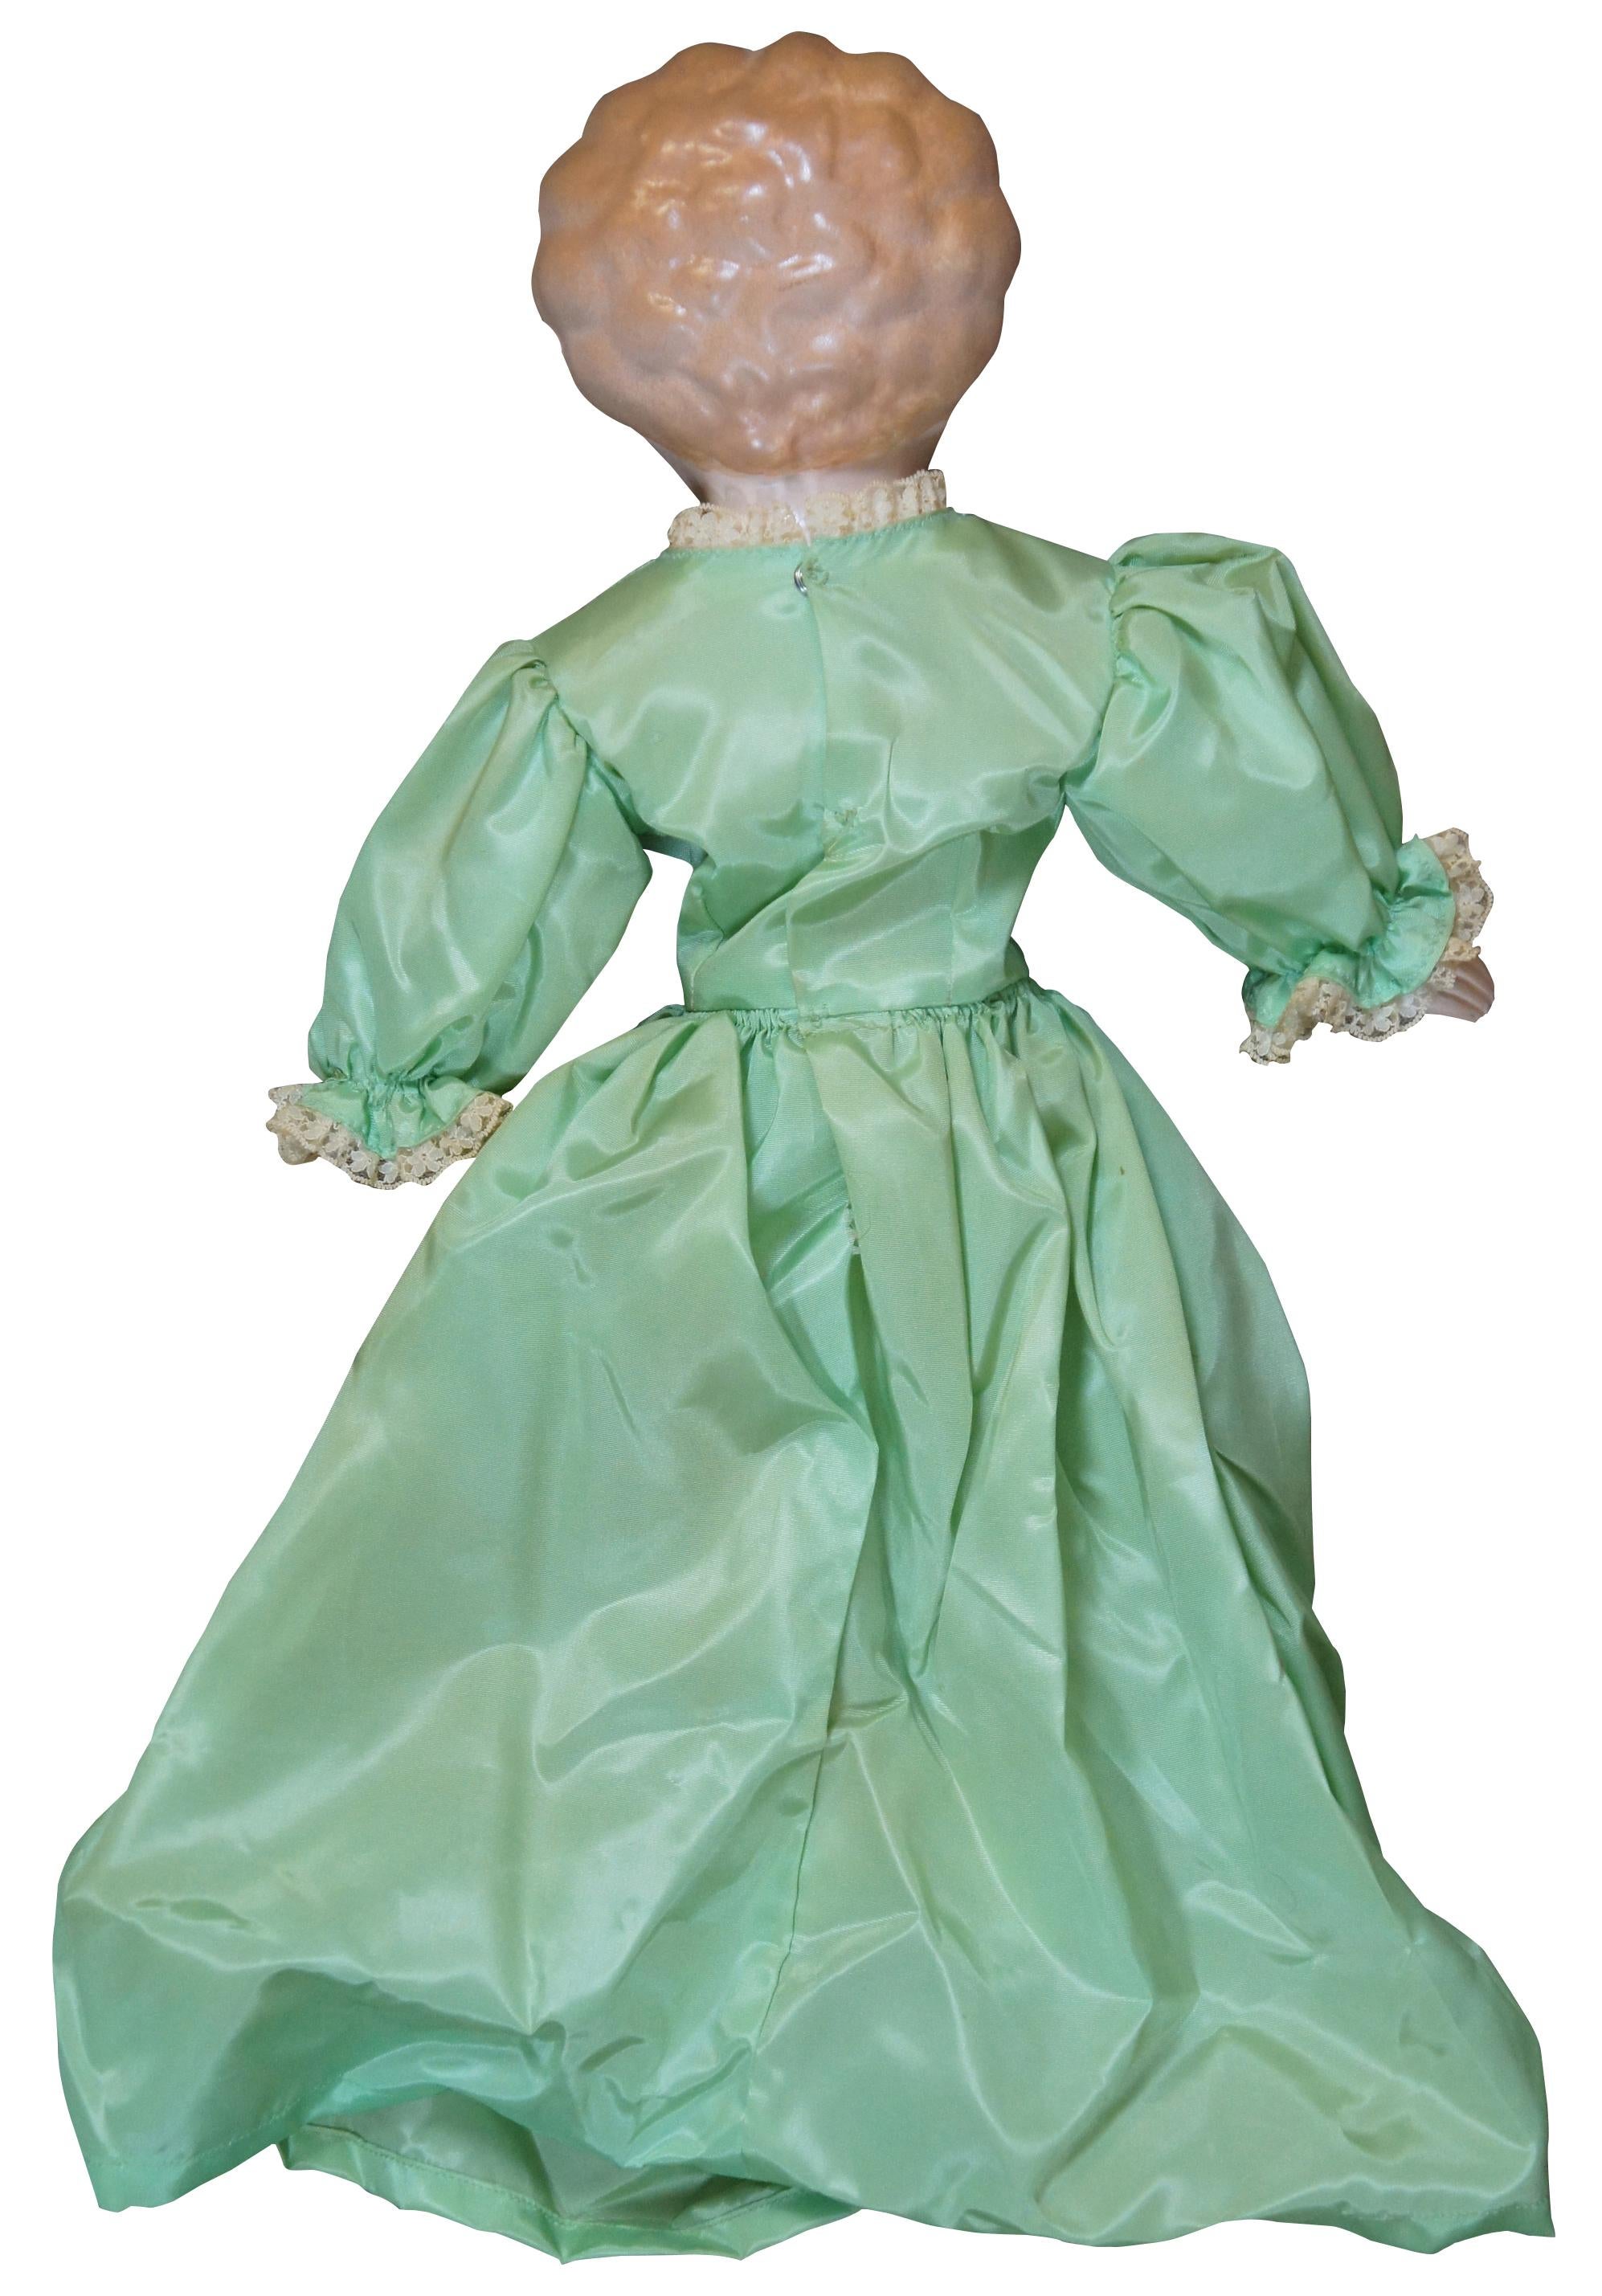 antique porcelain dolls 1800s